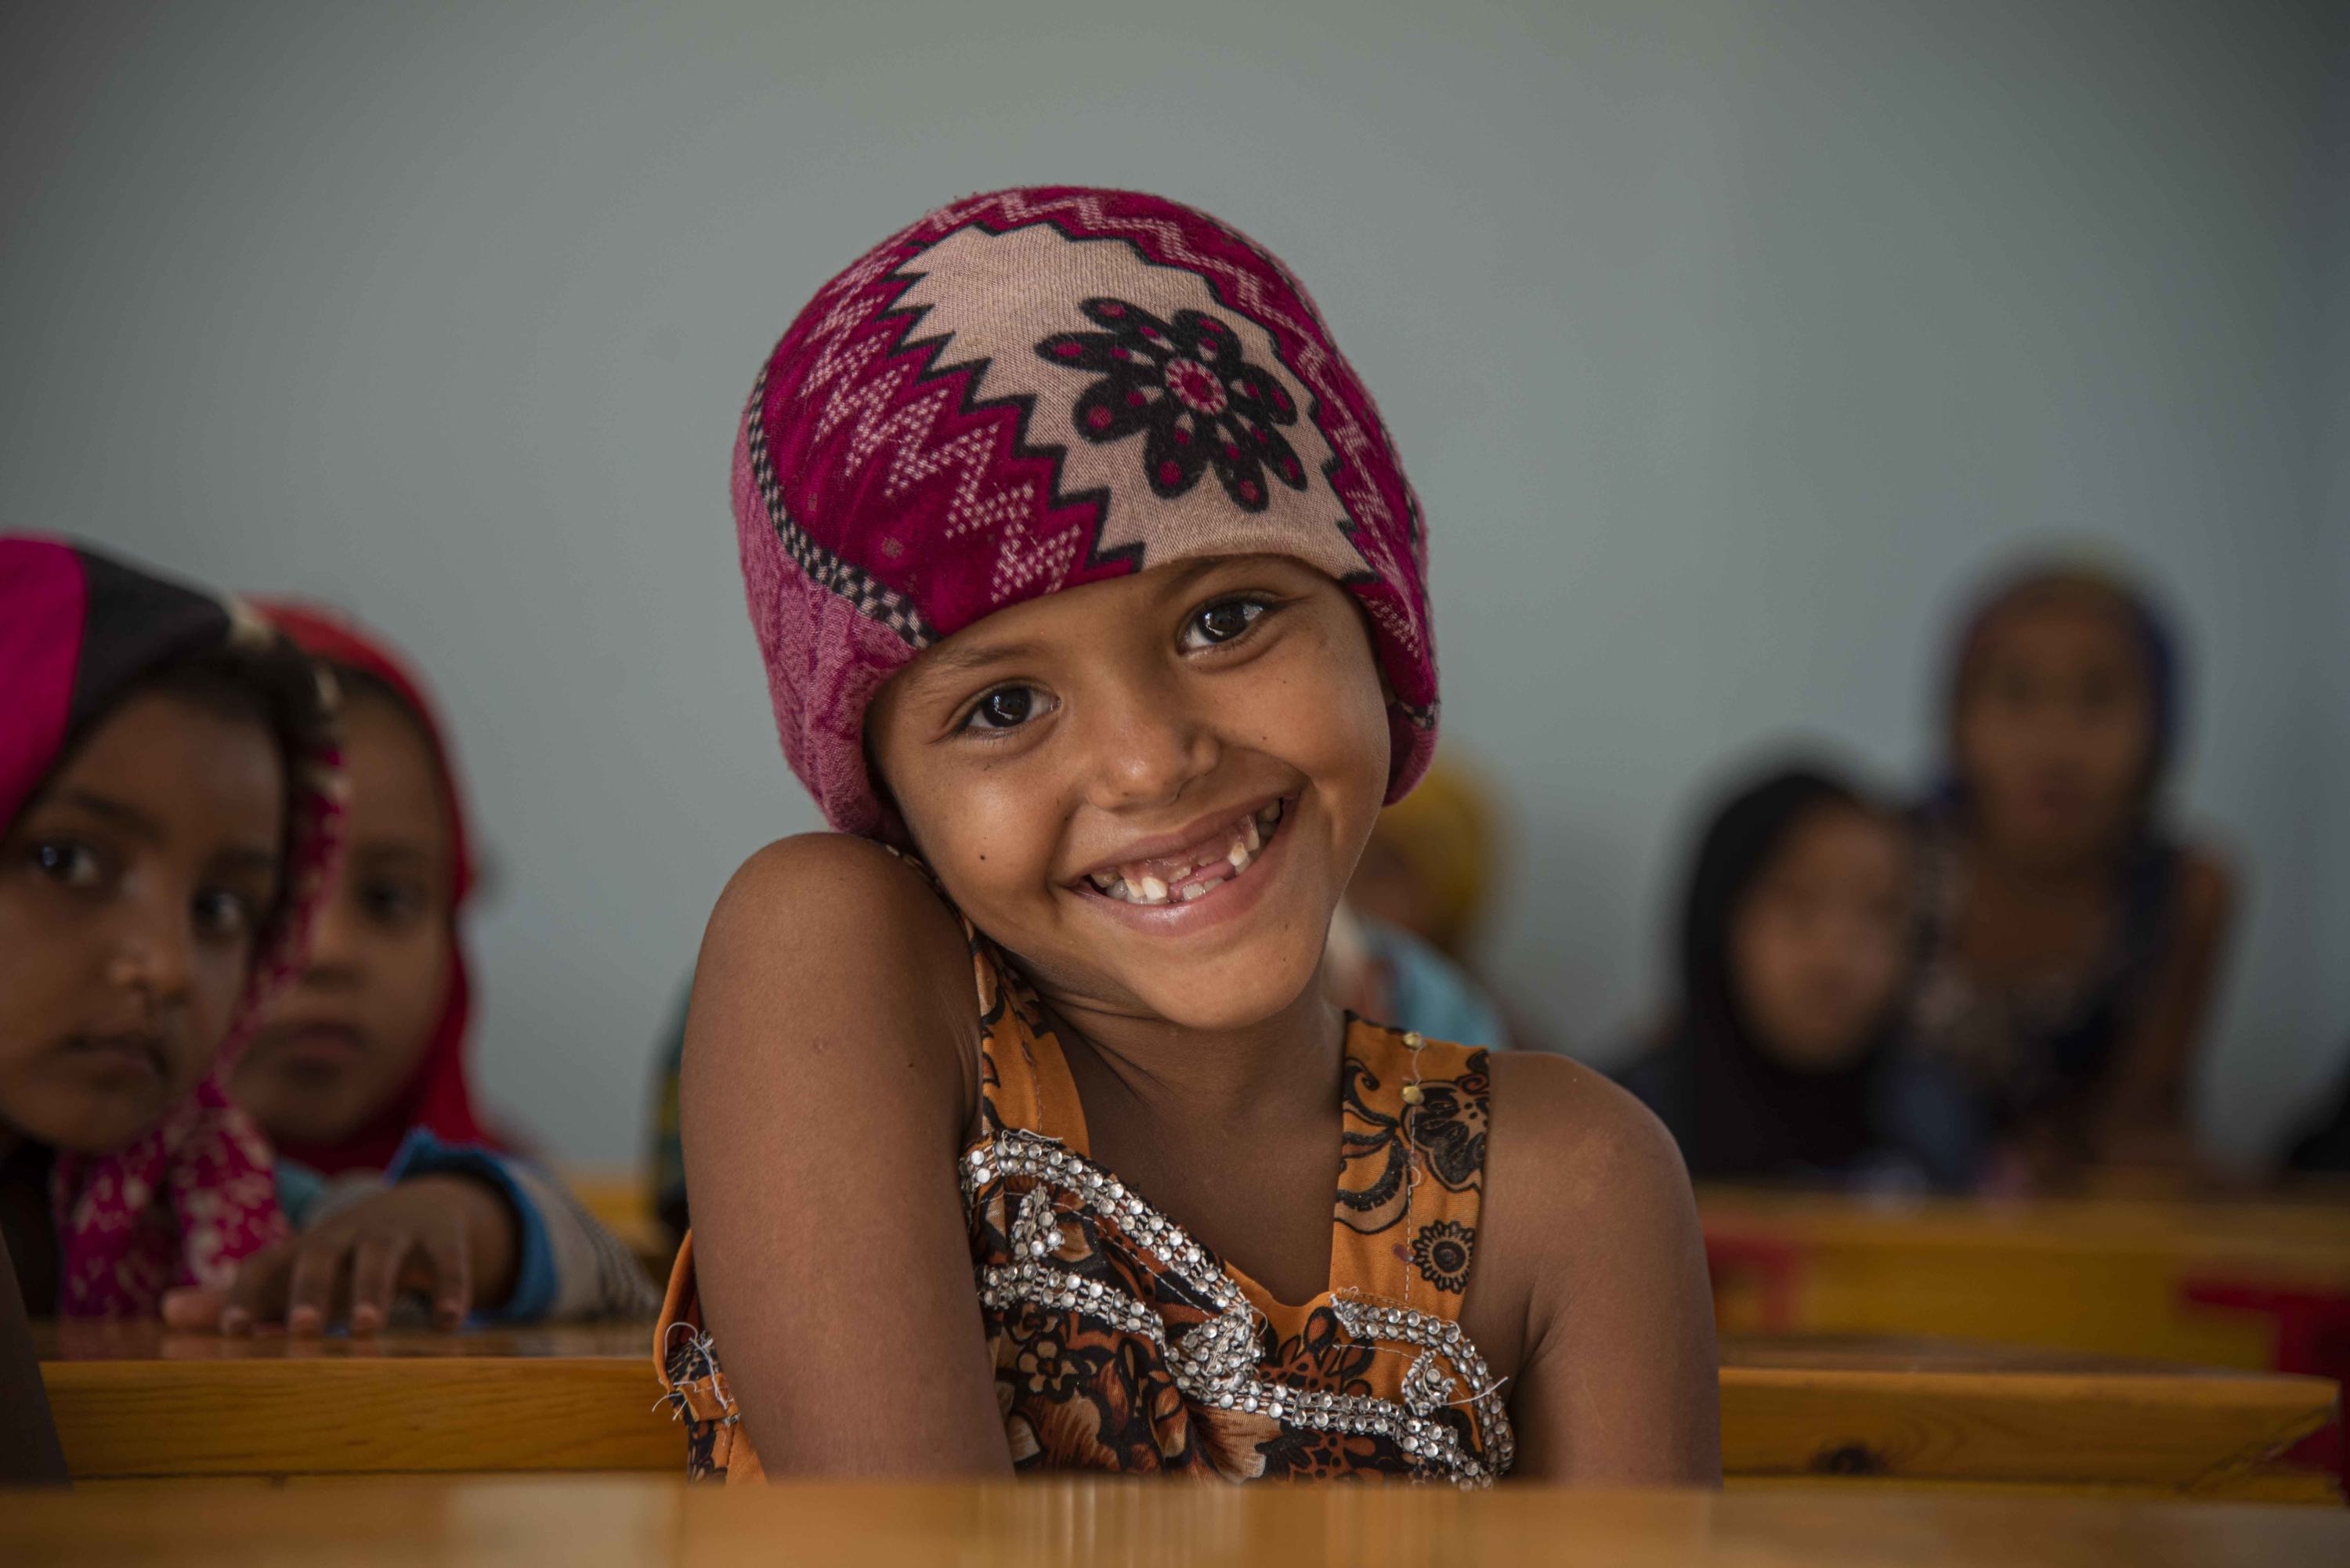 فتاة صغيرة في فصلها الدراسي في اليمن، حيث يدعم برنامج ممول من صندوق "التعليم لا ينتظر"المعلمين والطلاب من خلال تحسين الوصول إلى التعليم الجيد.